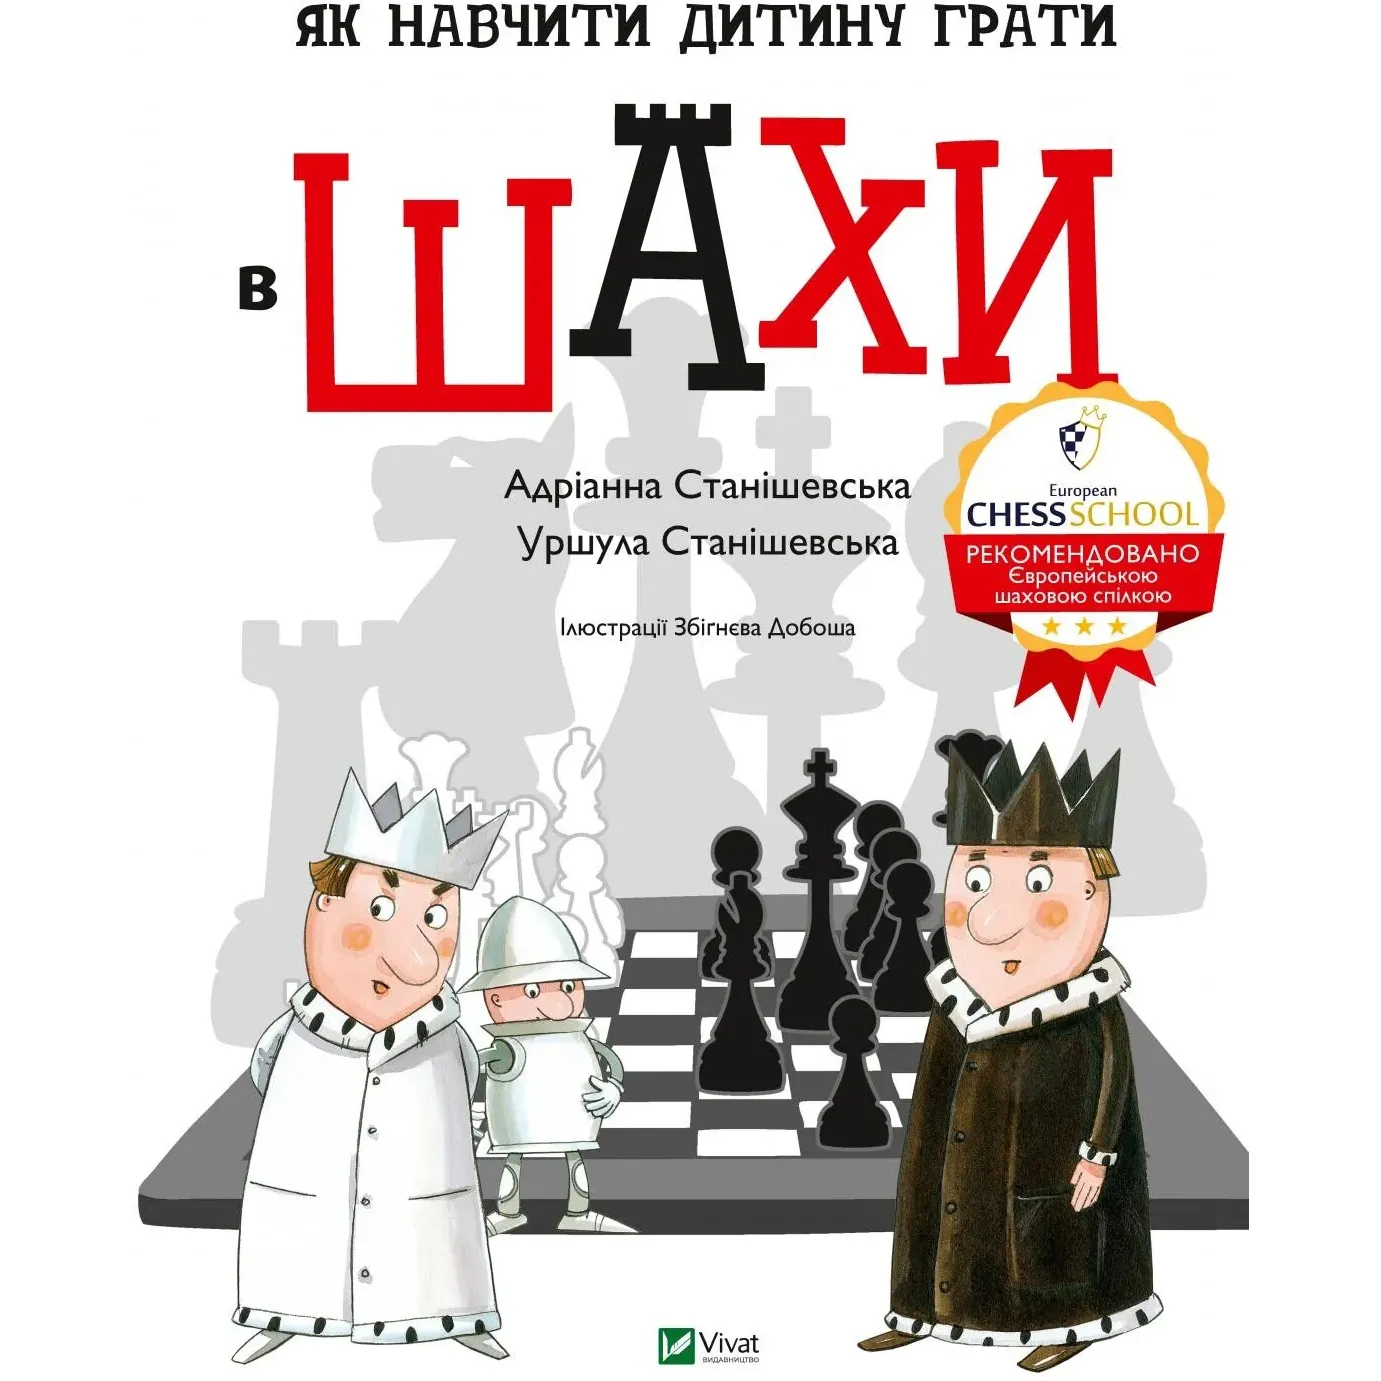 Як навчити дитину грати в шахи - Станішевська Адріанна, Станішевська Уршула - фото 1